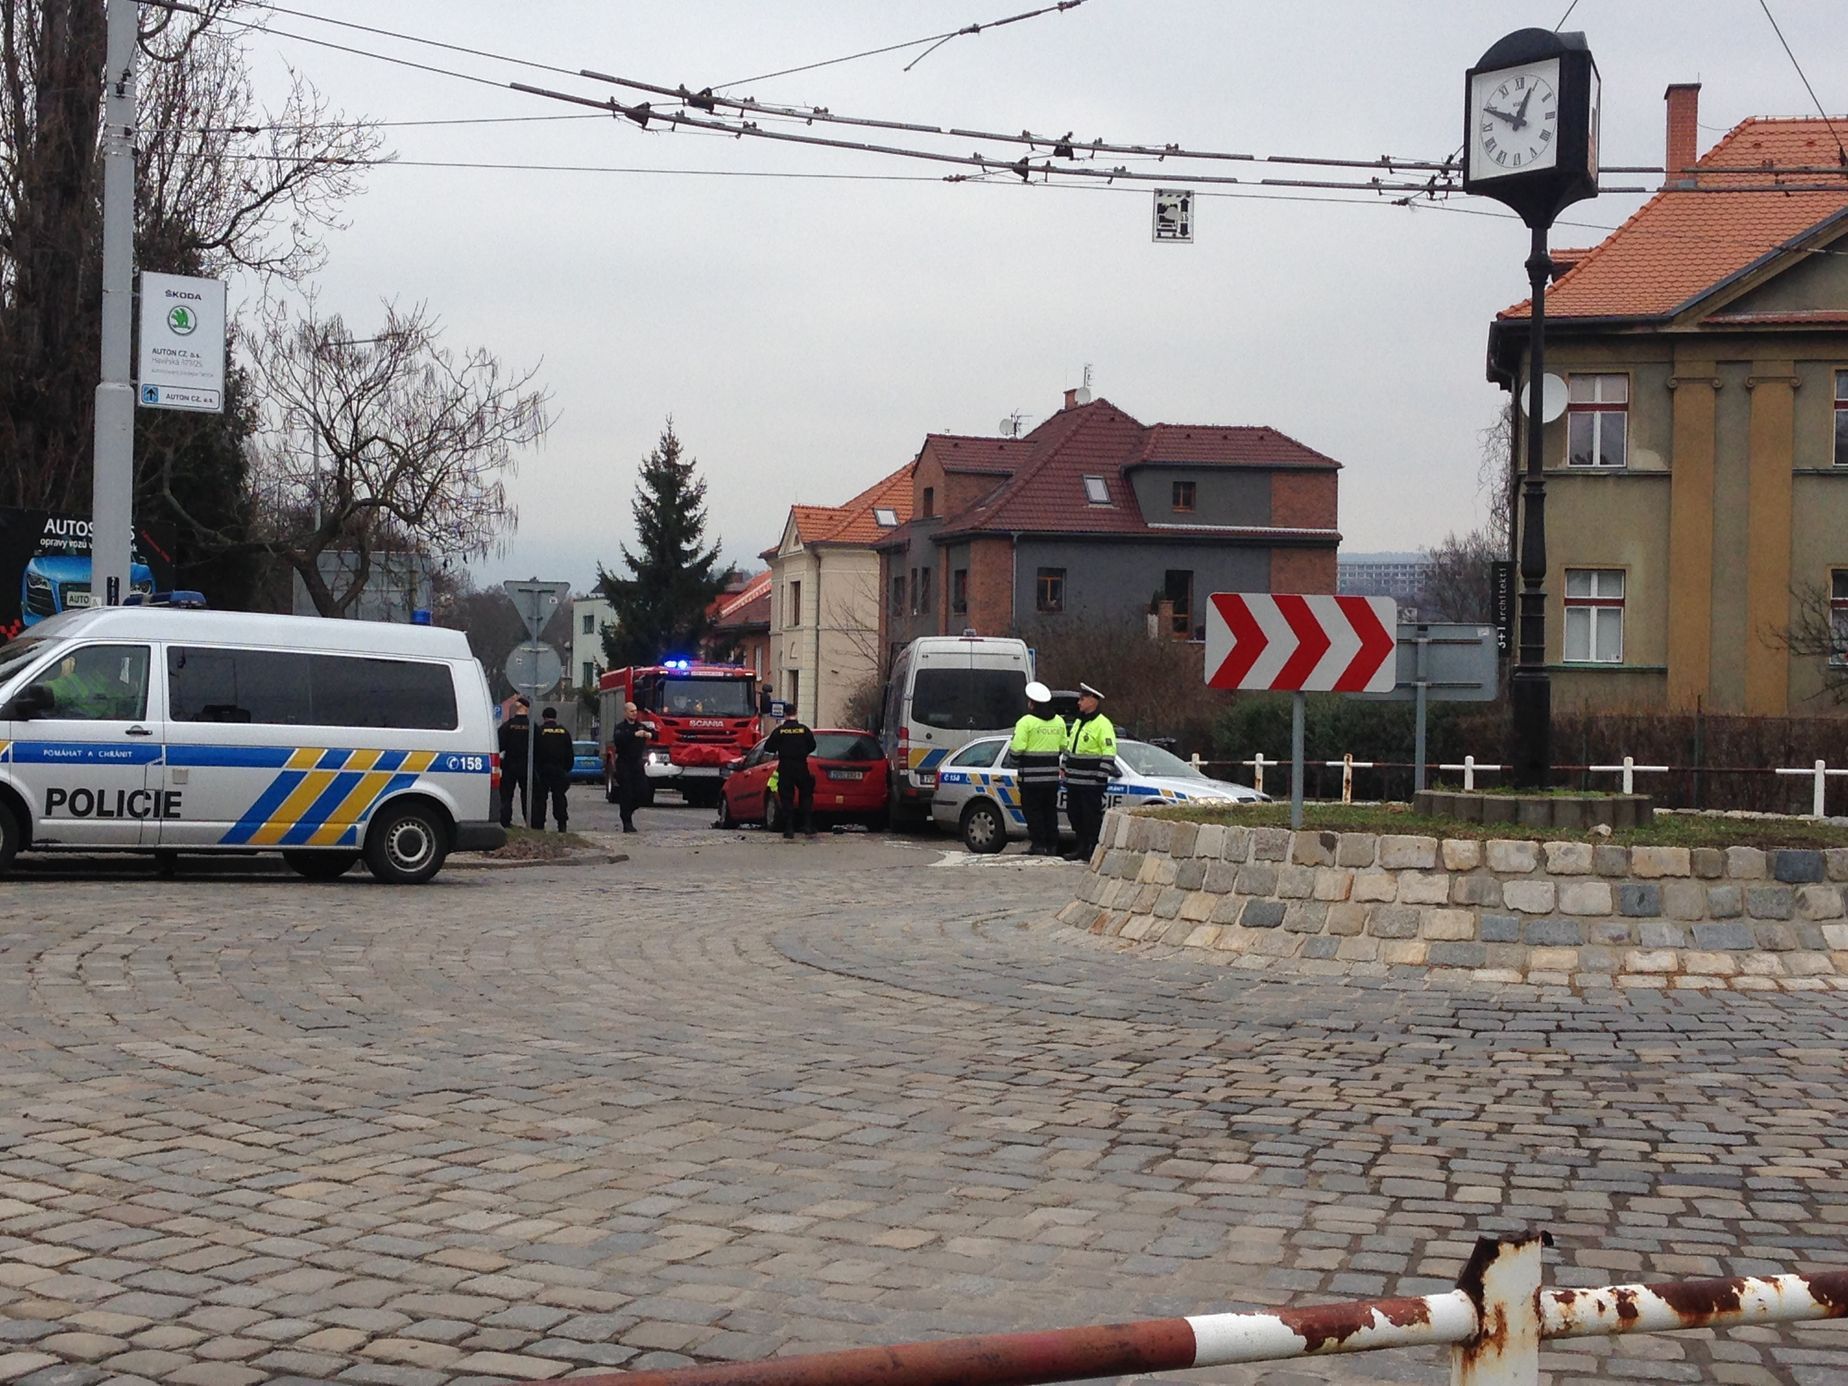 Dopravní nehoda tří aut včetně vozidla policie v Ústí nad Labem 7. 2. 2016